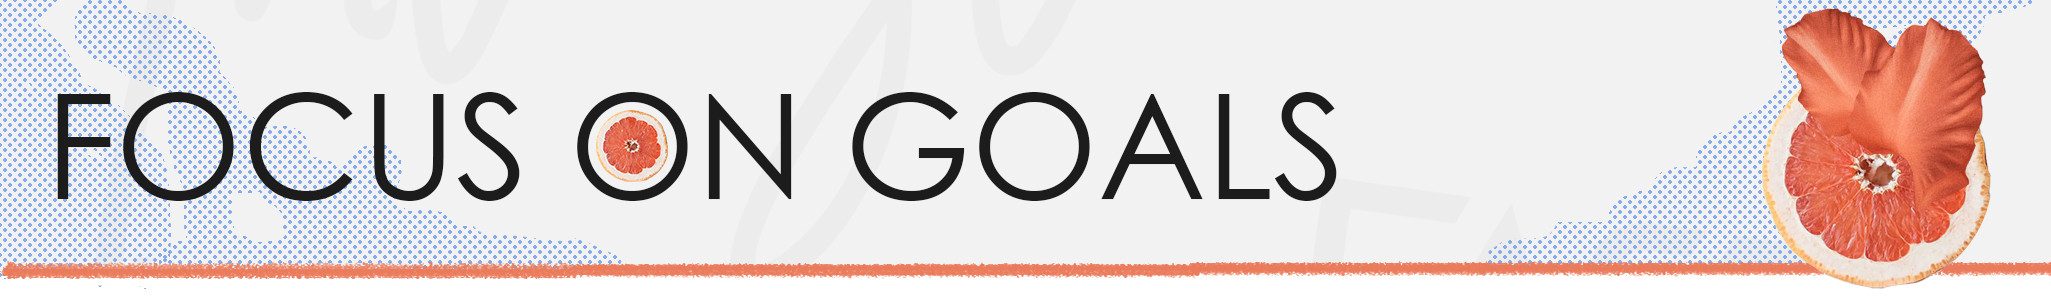 Text: Focus on Goals